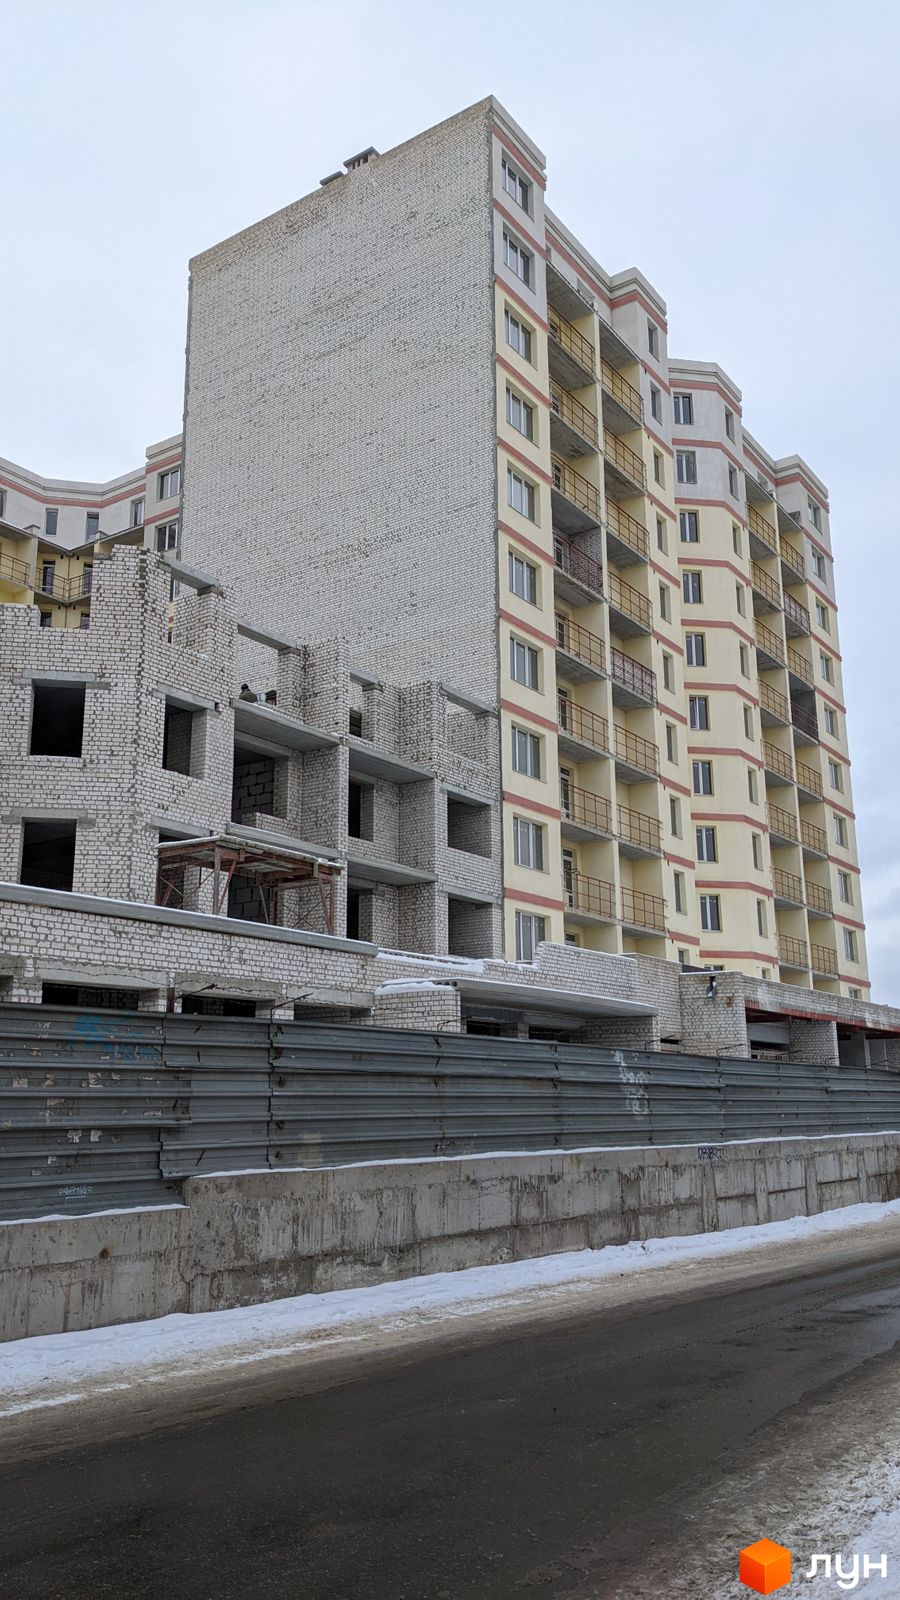 Моніторинг будівництва ЖБК Новий дім Котлова - Ракурс 2, січень 2022